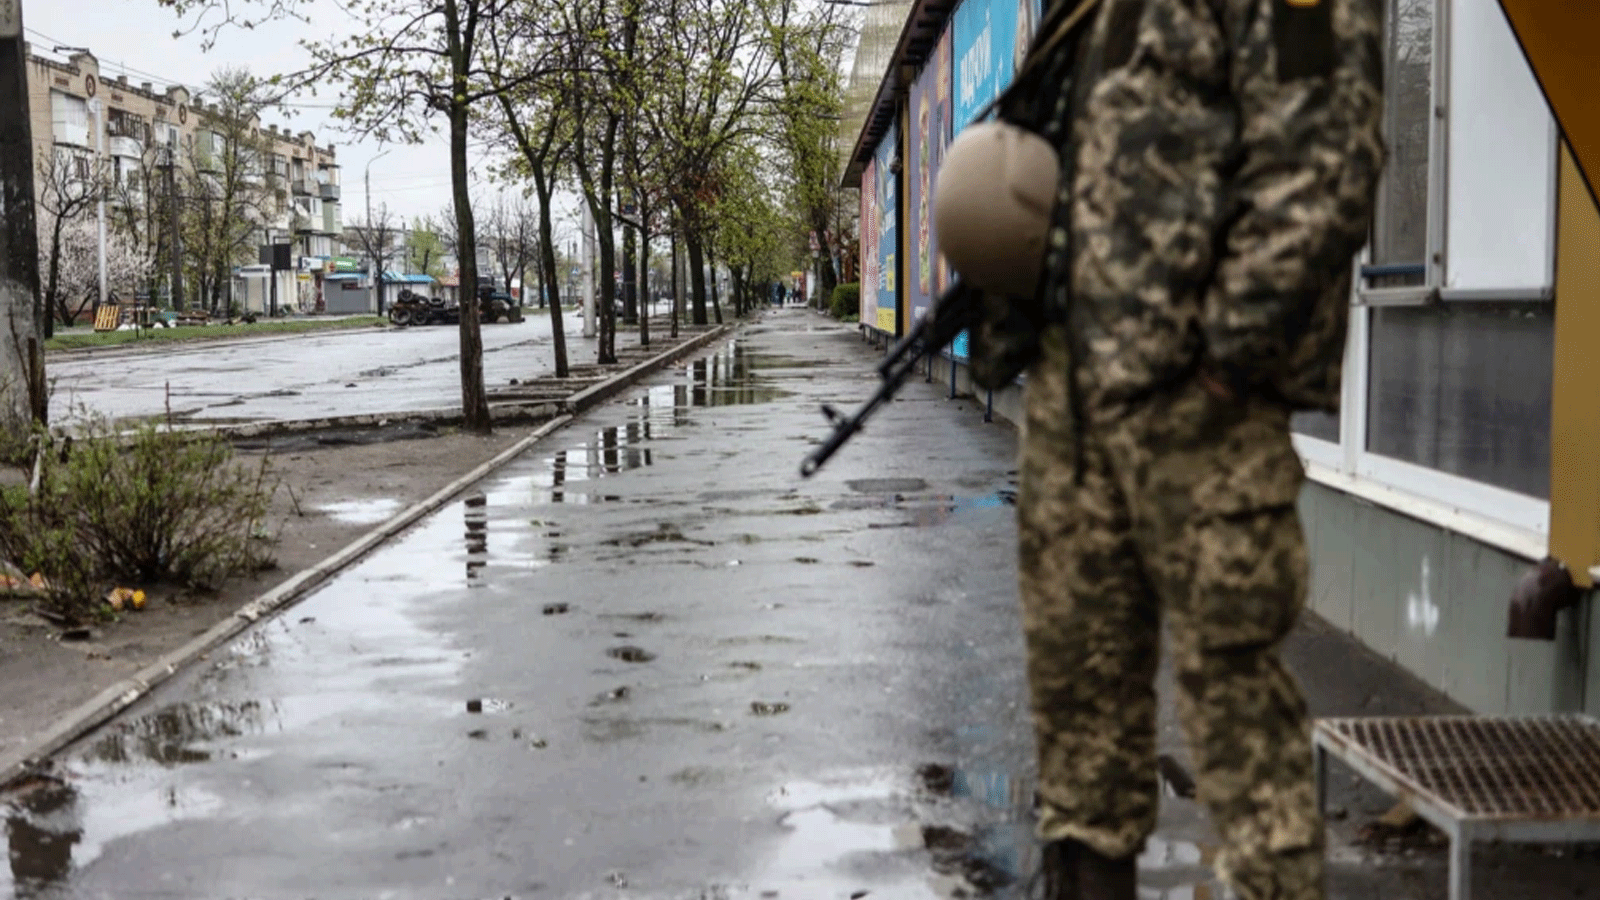  جندي يقف في شارع في سيفيرودونتسك، في منطقة دونباس بشرق أوكرانيا، في 13 أبريل 2022 